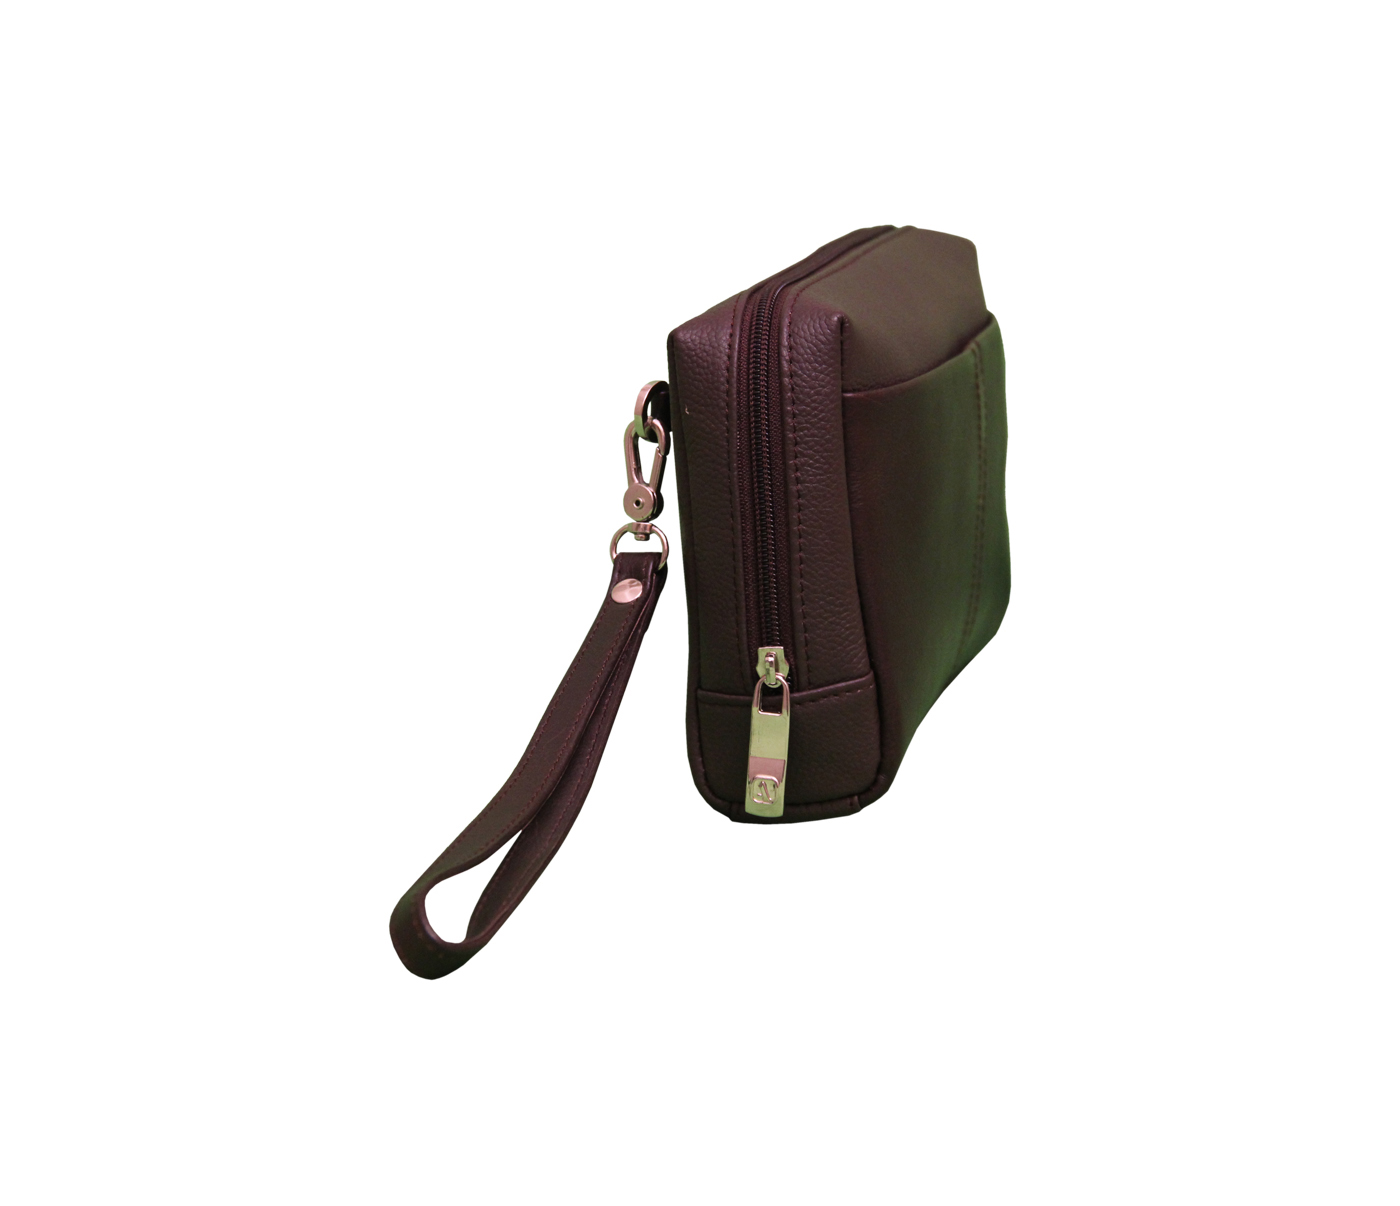 P21-Hayden-Men's bag cum travel pouch in Genuine Leather - Brown.